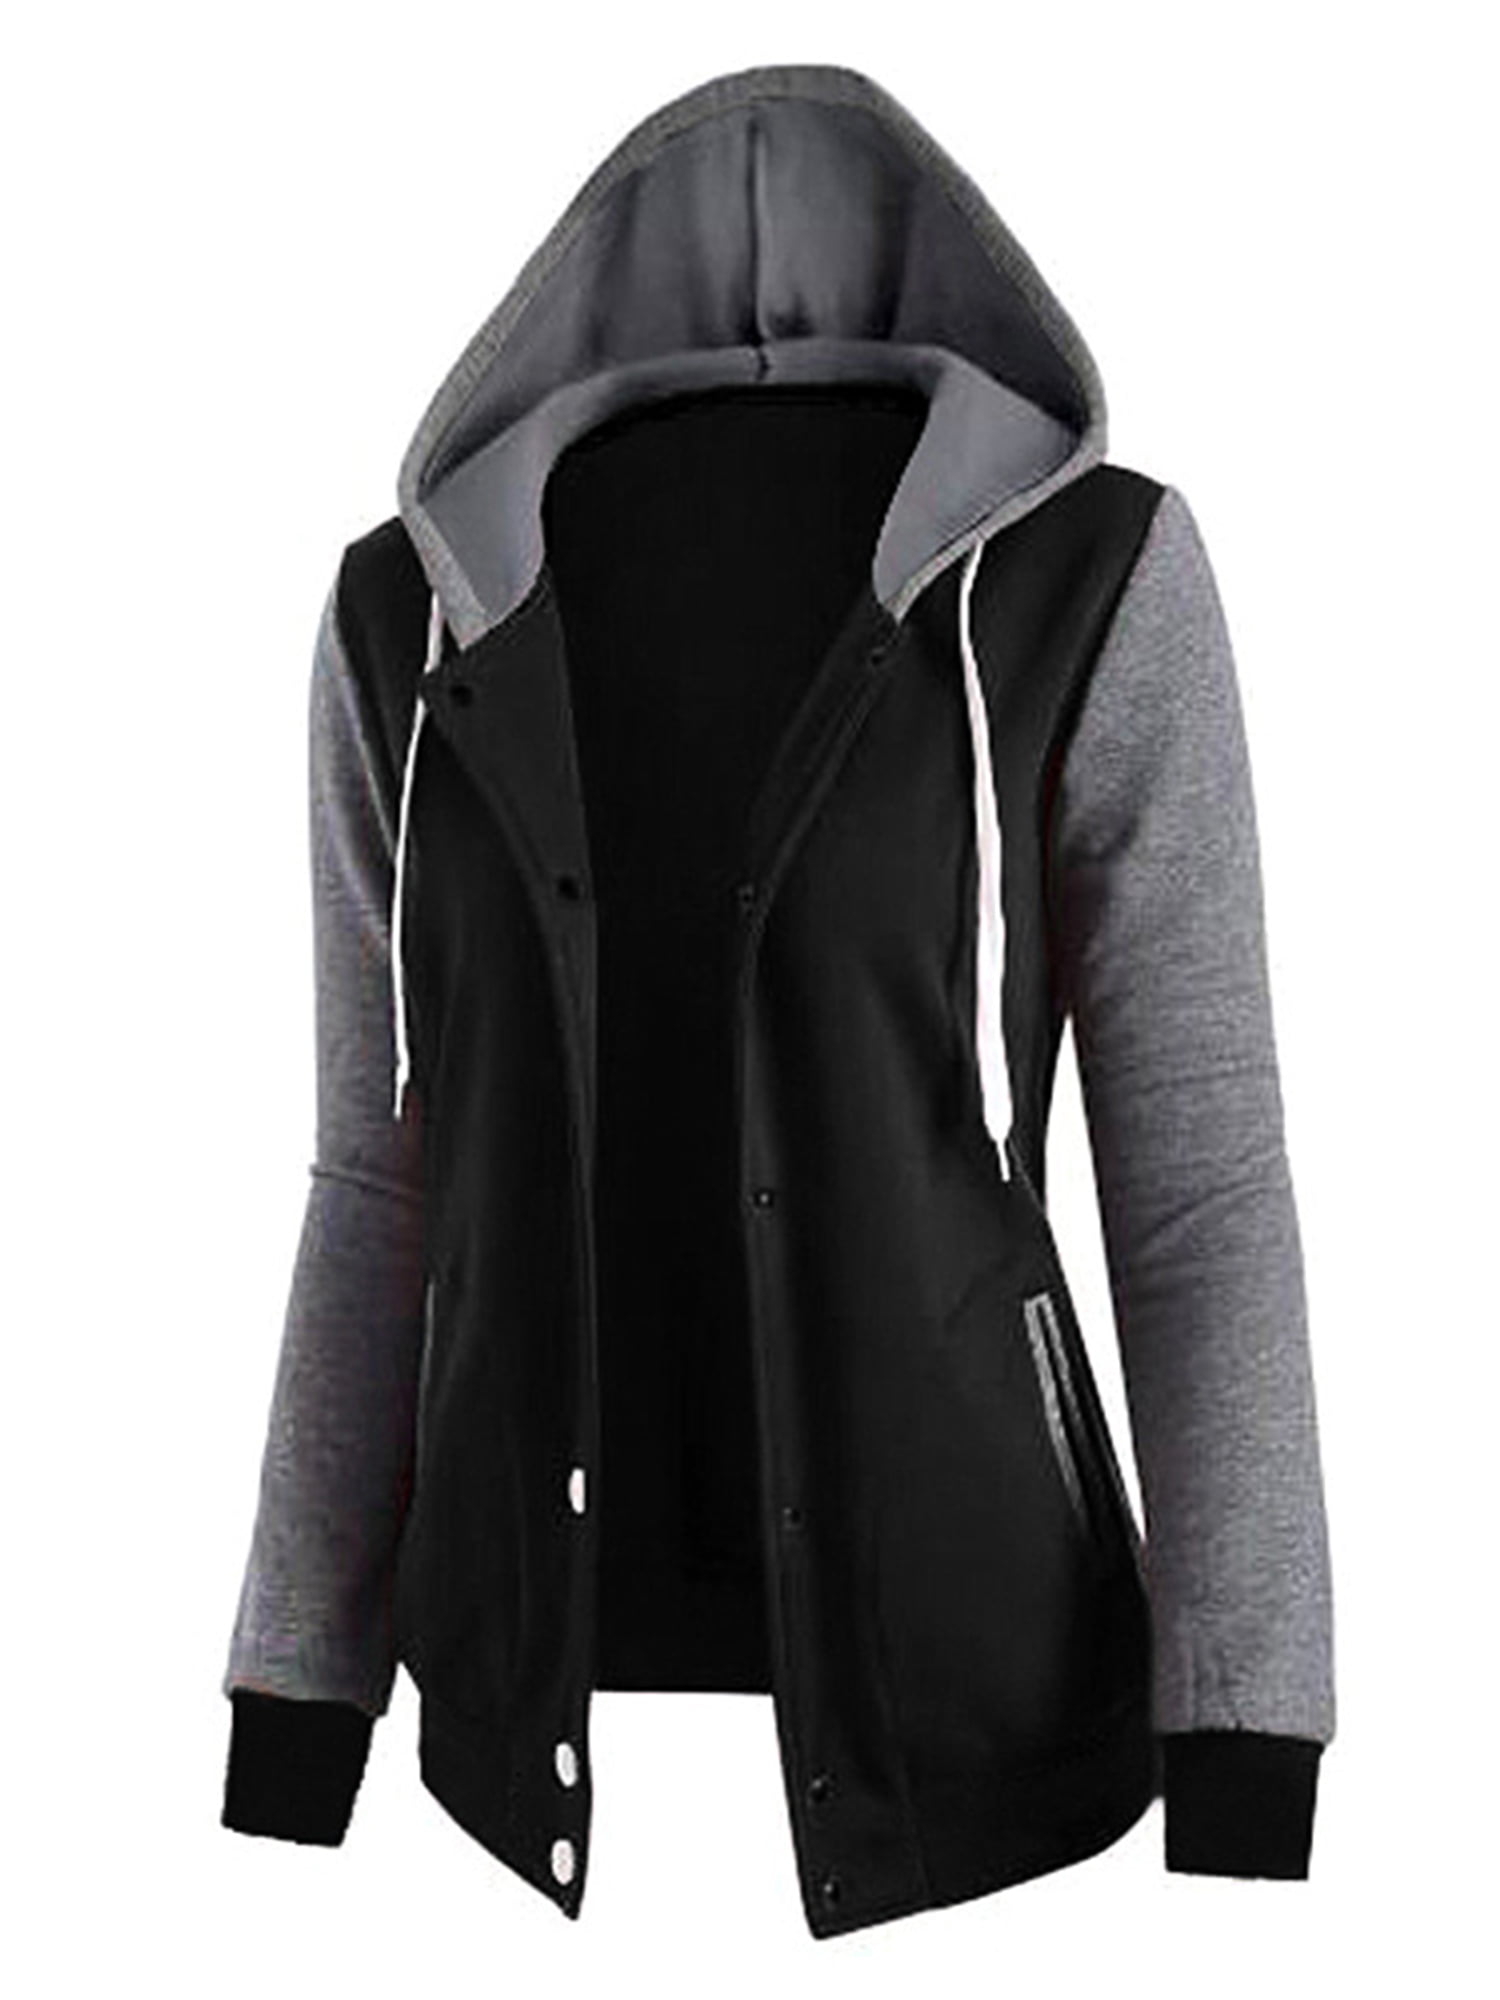 Hoodie Sweatshirt Zip Up Solid Jacket Hooded Women Jumper Hoody Coat Top Outwear 